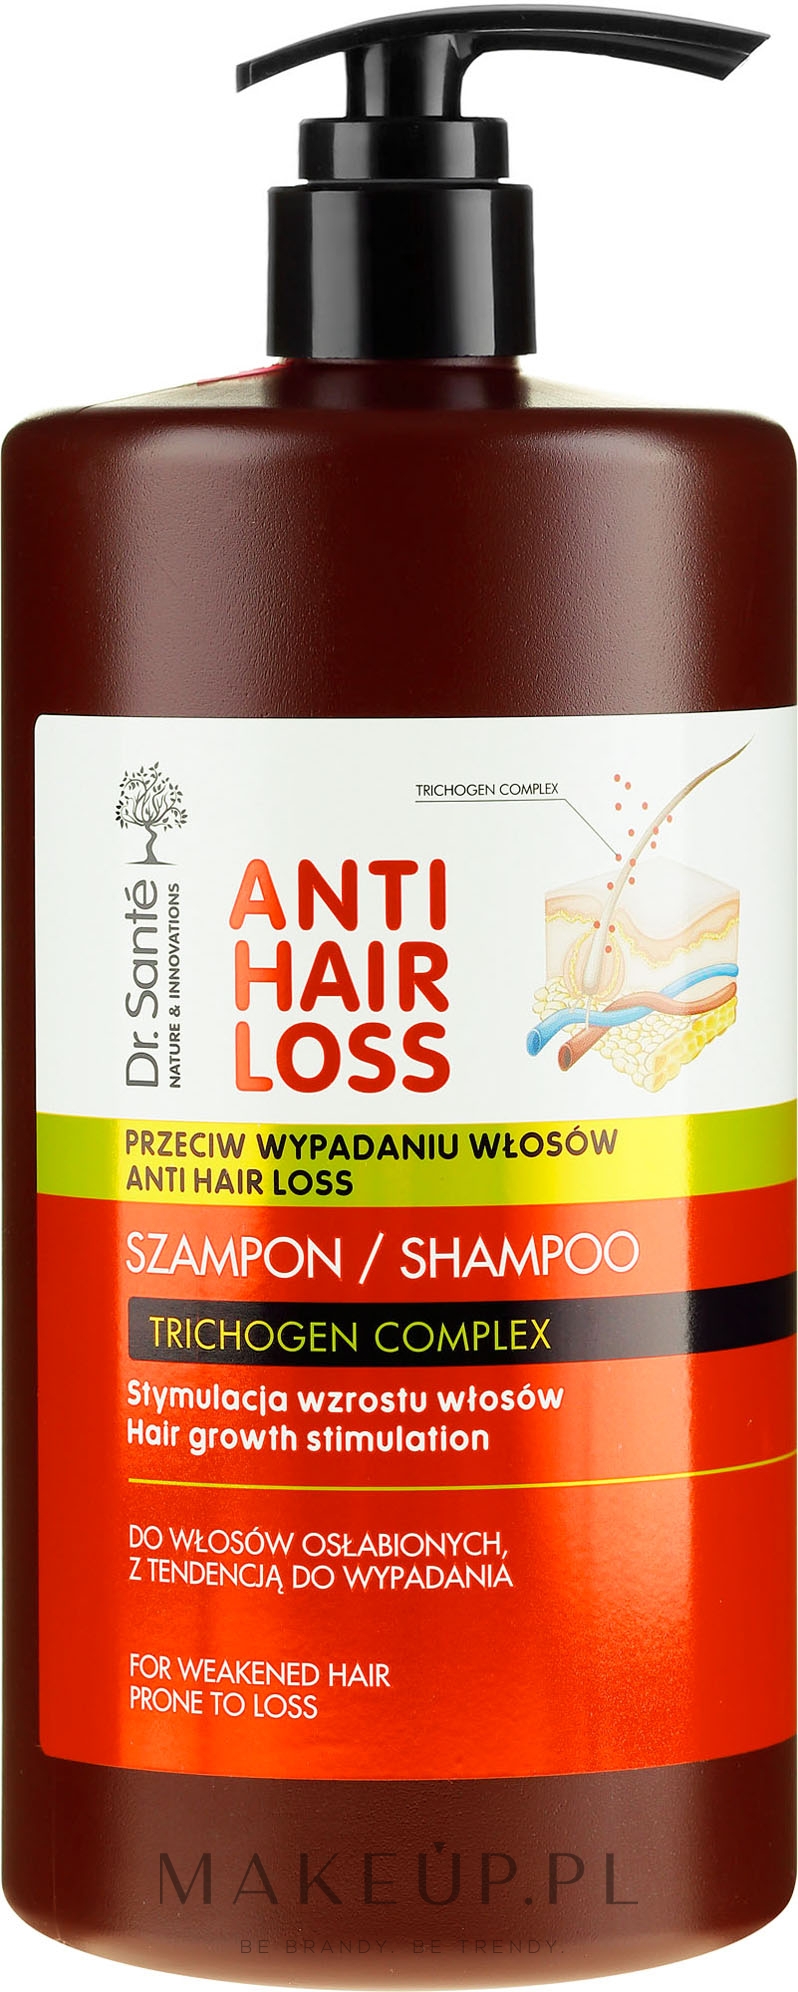 dr sante szampon przeciw wypadaniu włosów opinie